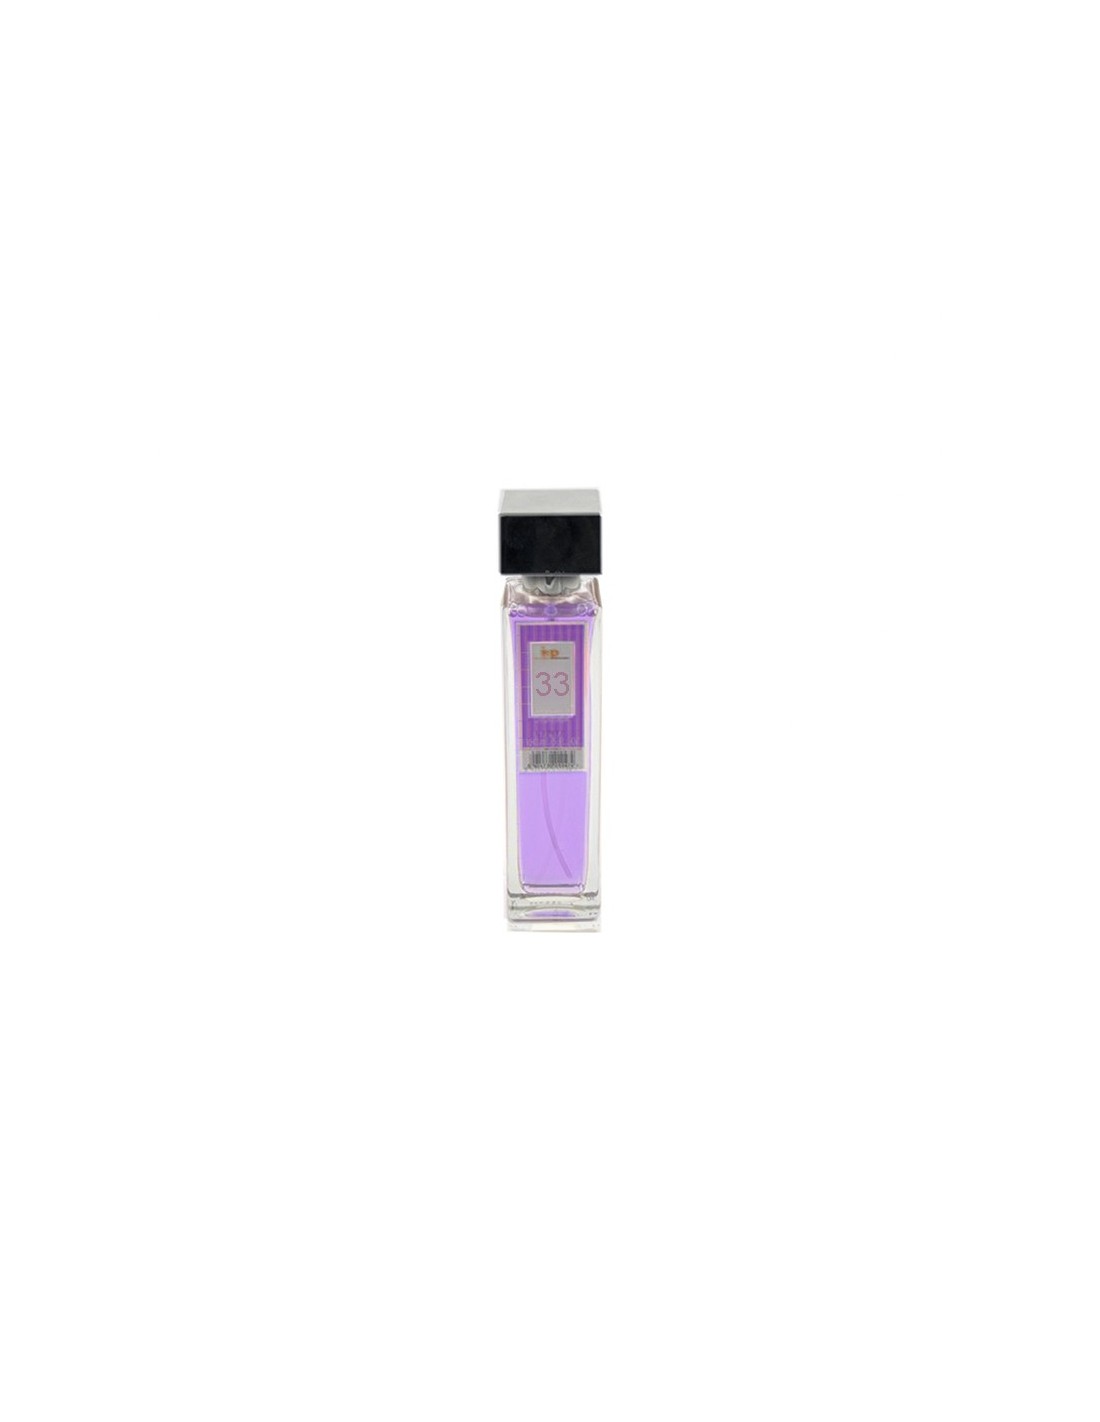 IAP Perfume Mujer N33 150ml